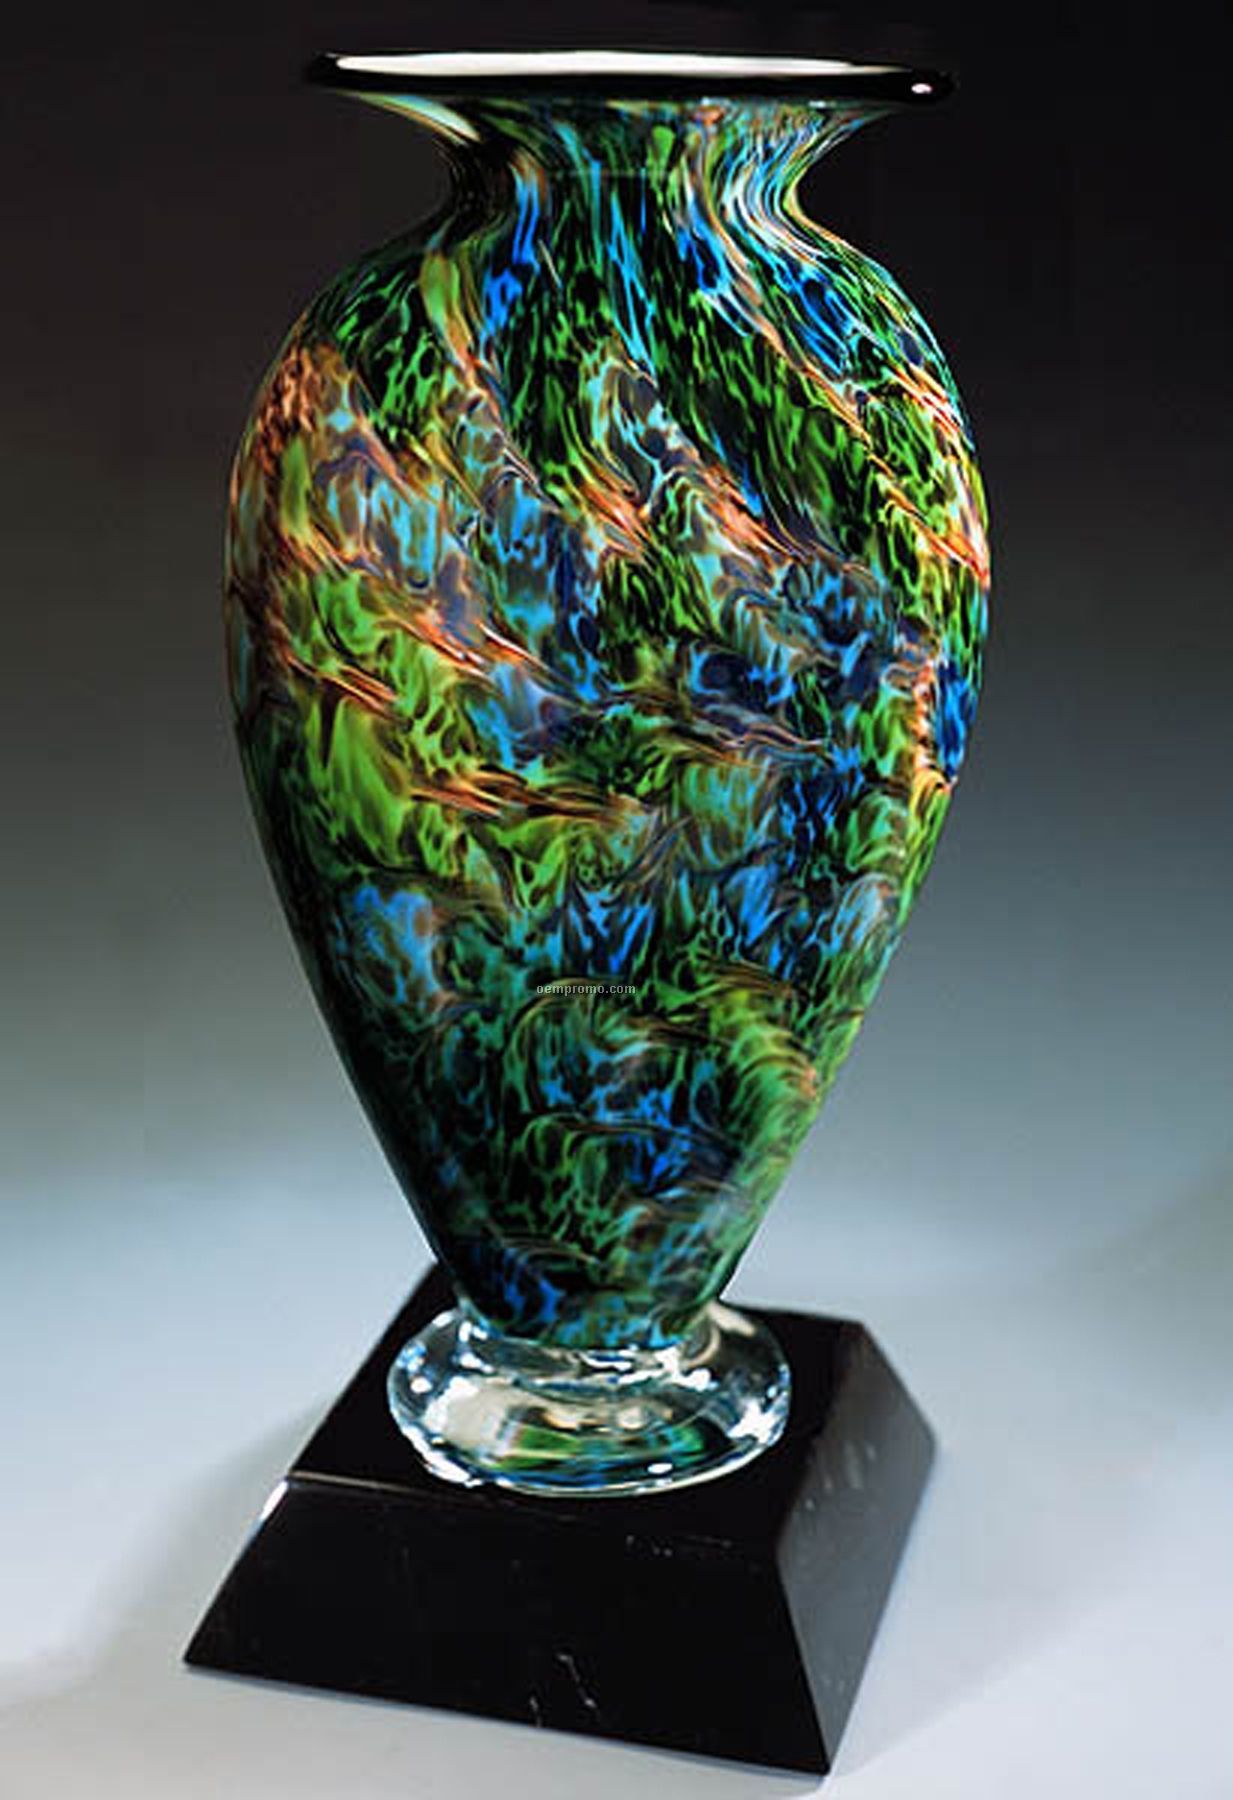 Jade Glen Mercury Sculpture Award W/ Marble Base (6.5"X13.5")